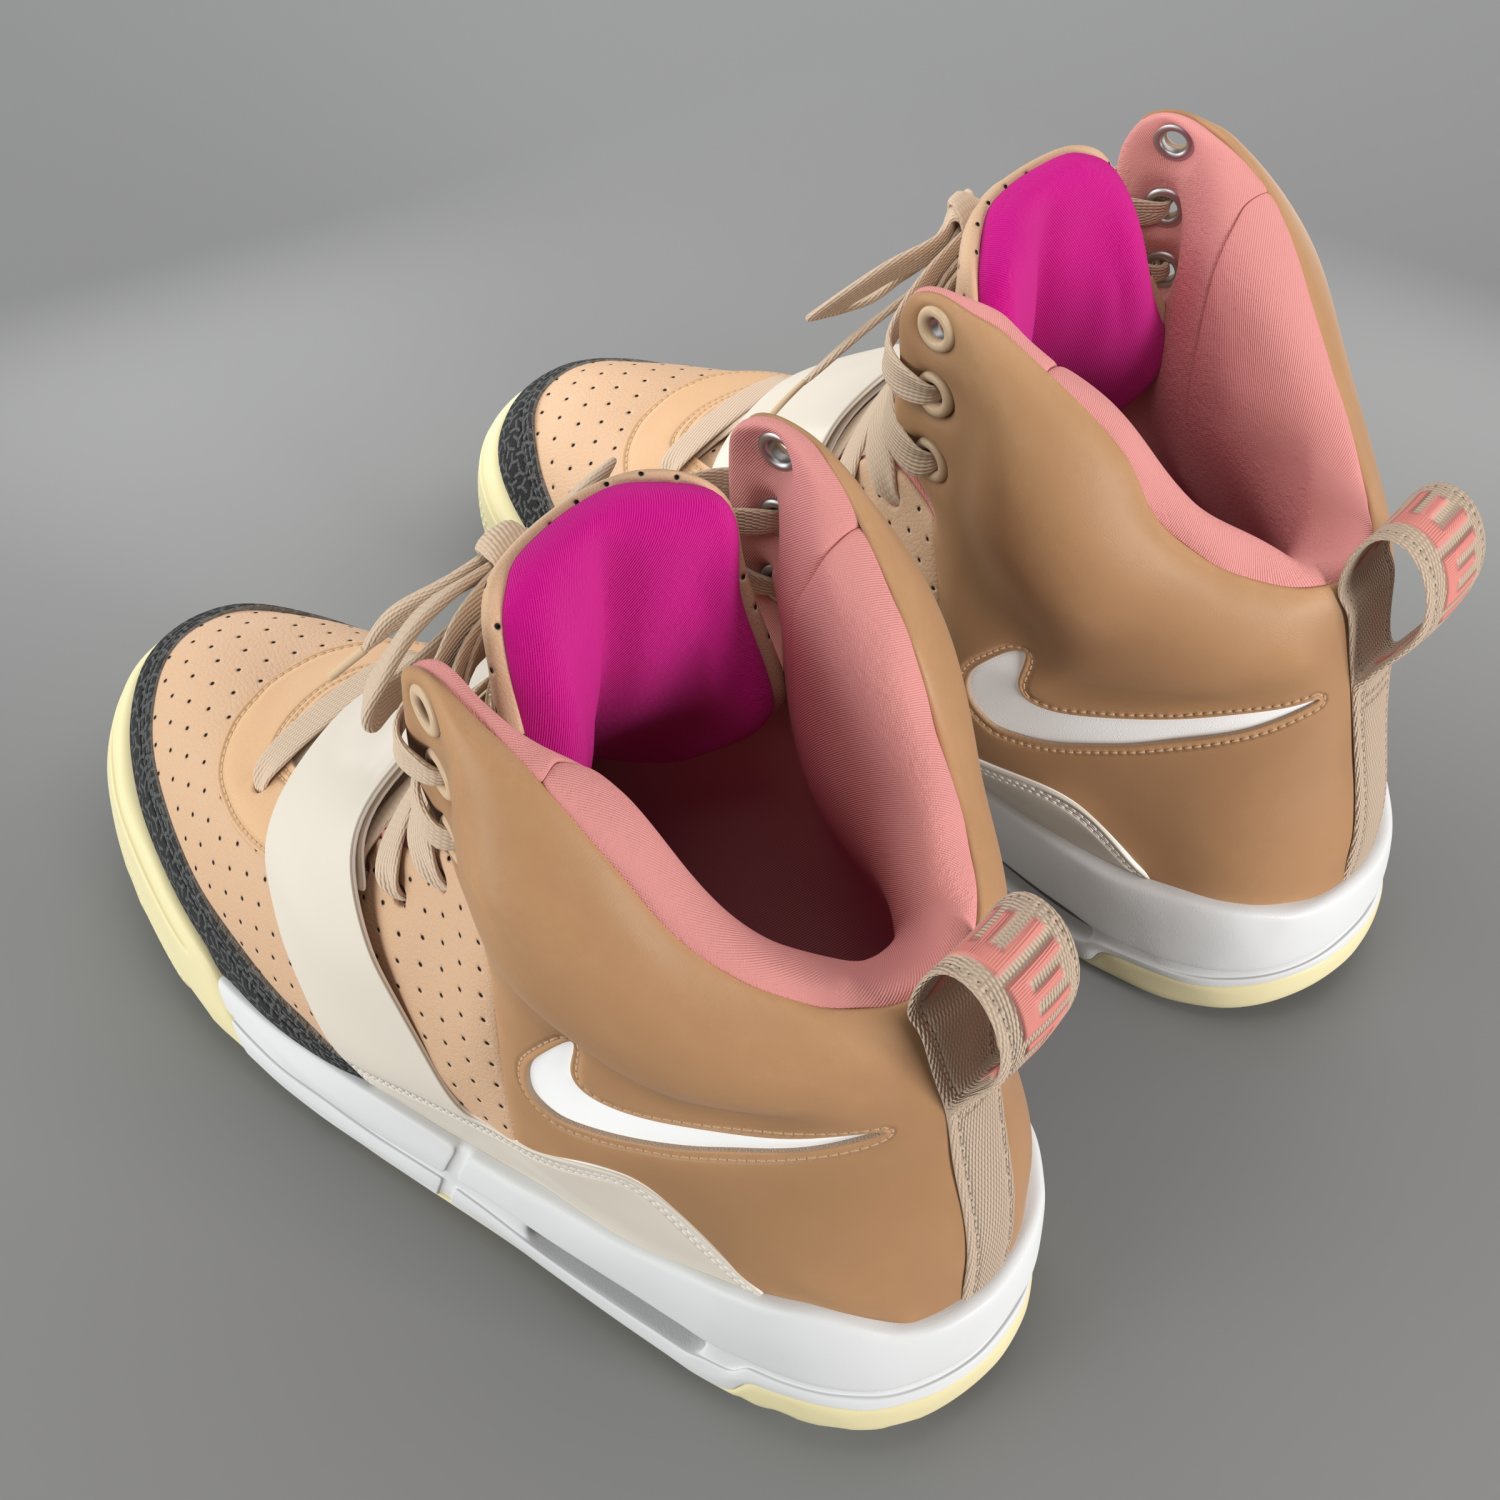 Nike Air Yeezy Gen 1 Sneaker - 3D Model by MrDavids